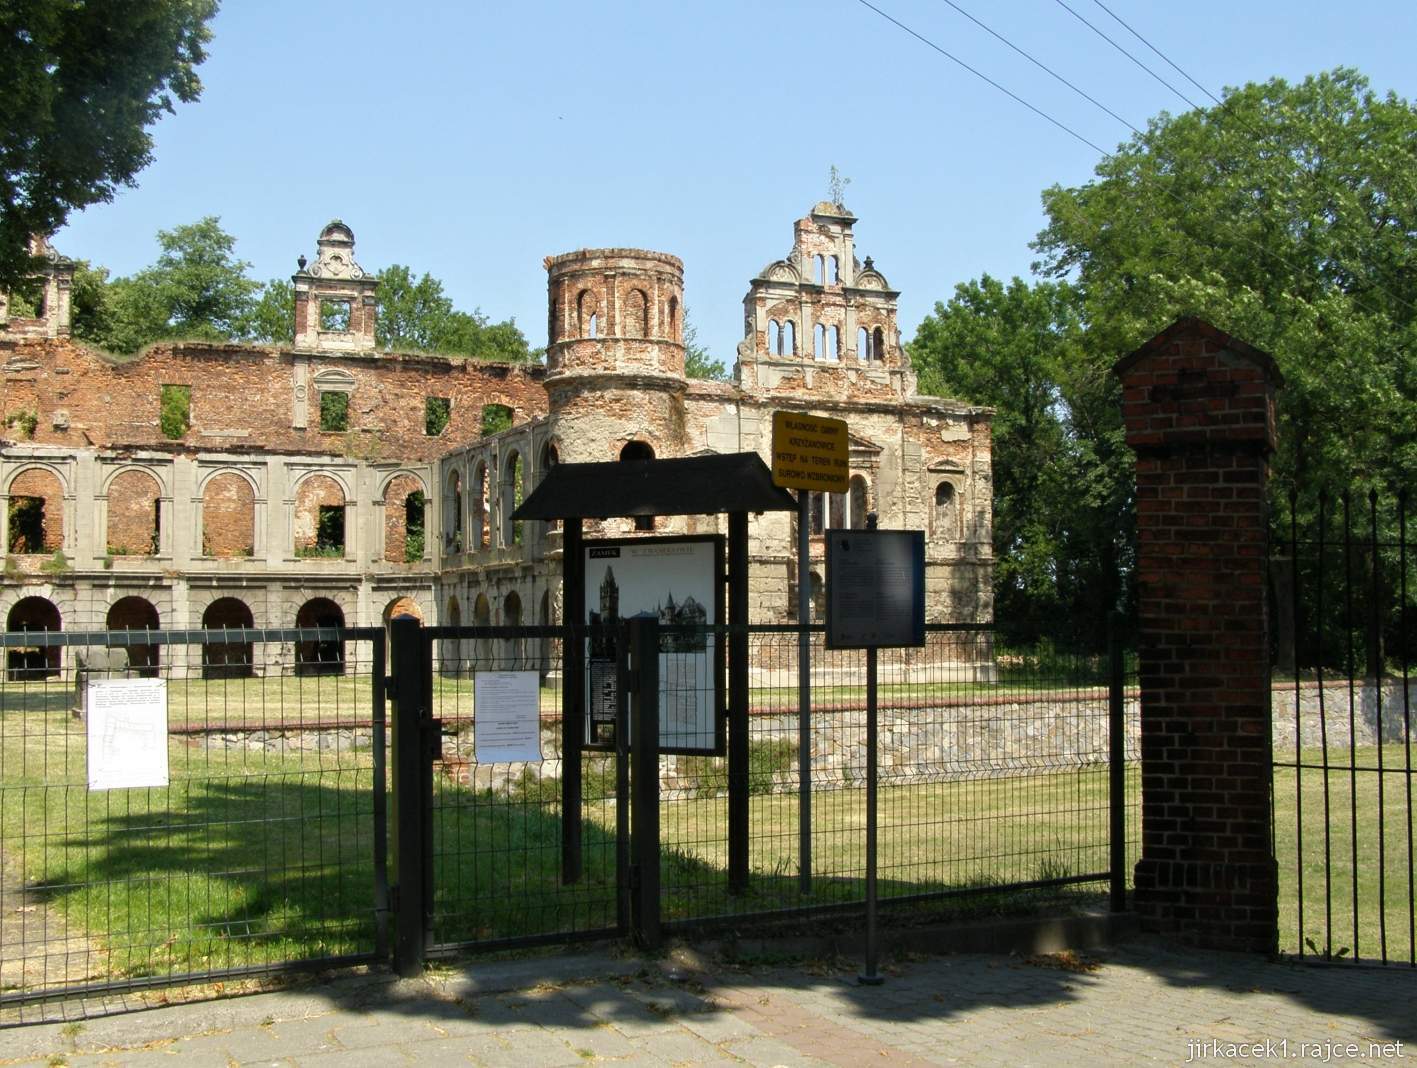 Tworków - ruiny zámku 01 - vstupní brána a část zámku